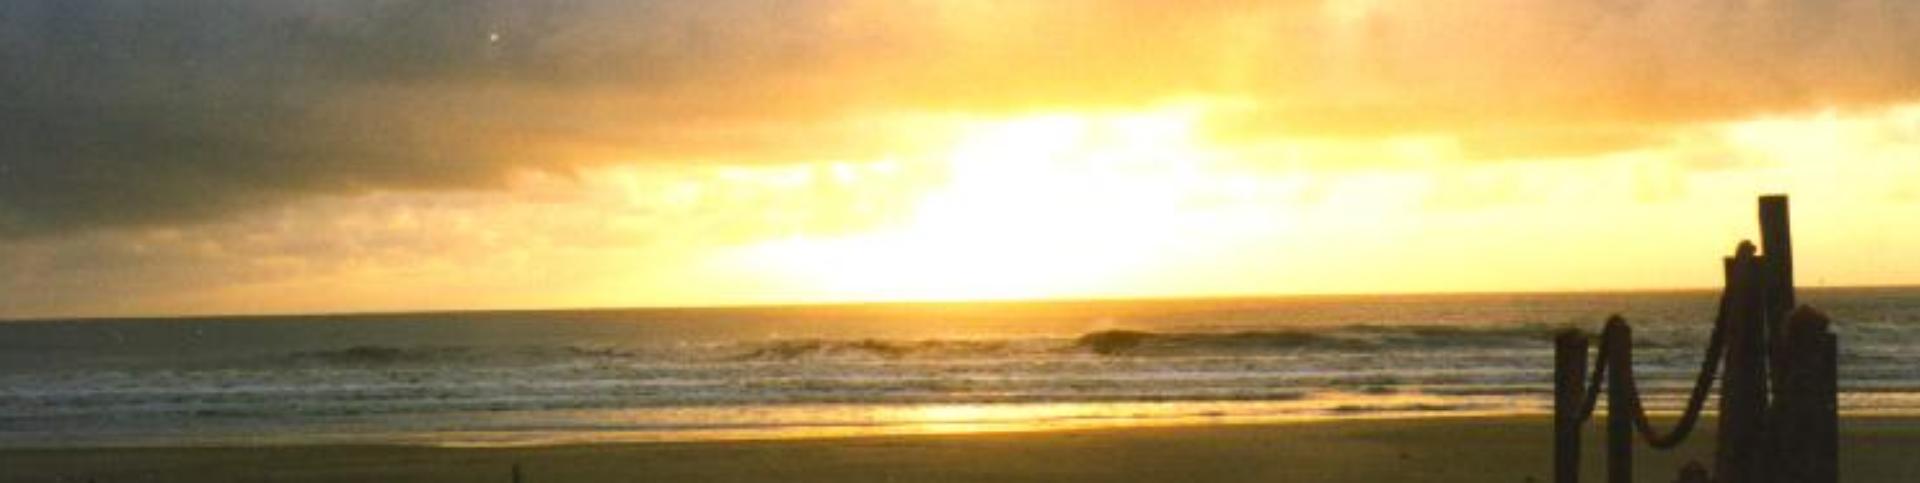 Foto de un amanecer en Cabo Polonio